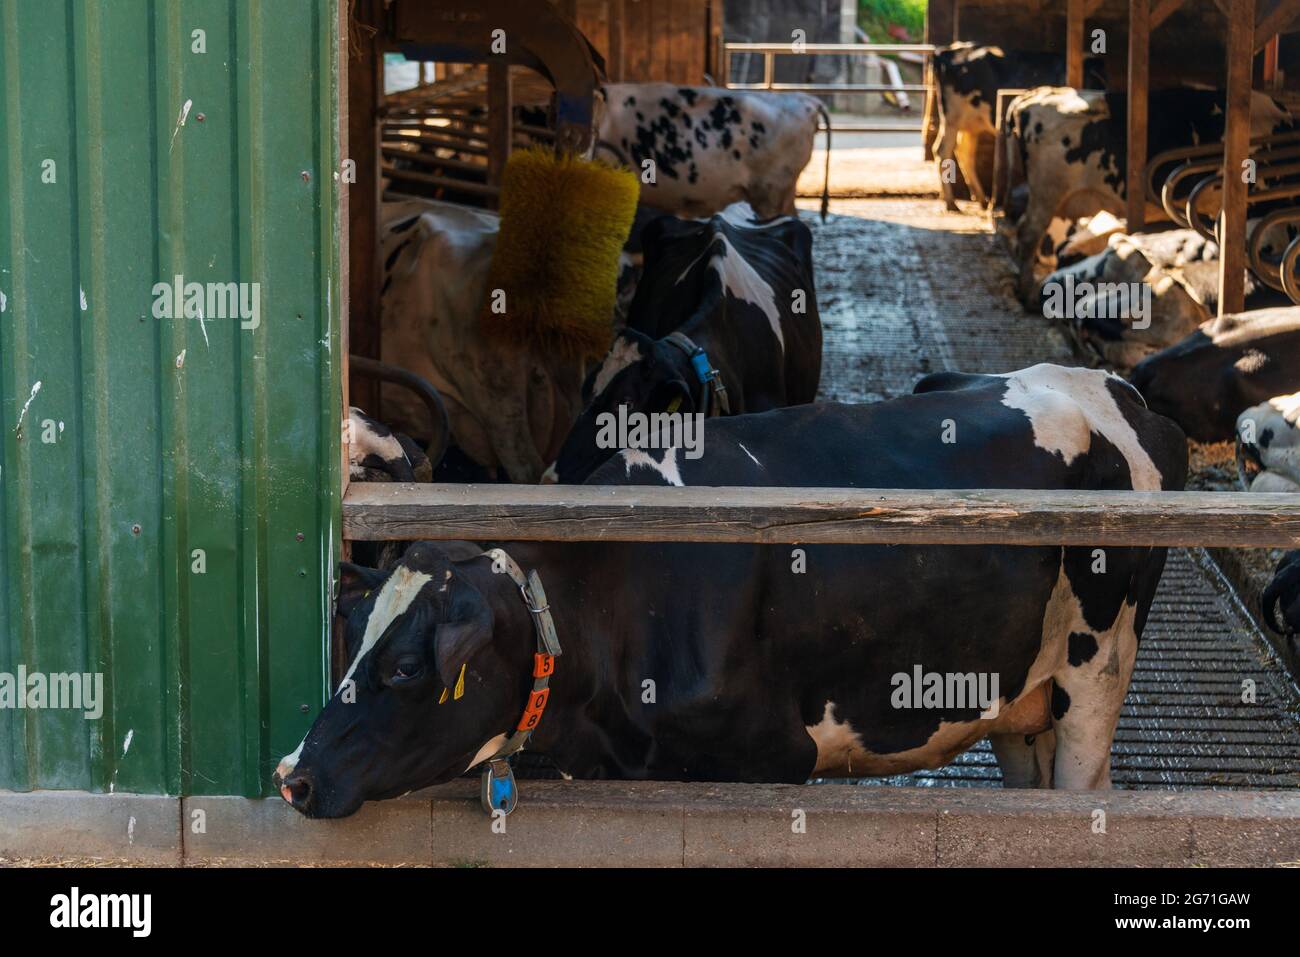 Kälberzucht auf einem dem Tierwohl, verpflichtendem Bauernhof in der Holsteinischen Schweiz Foto Stock